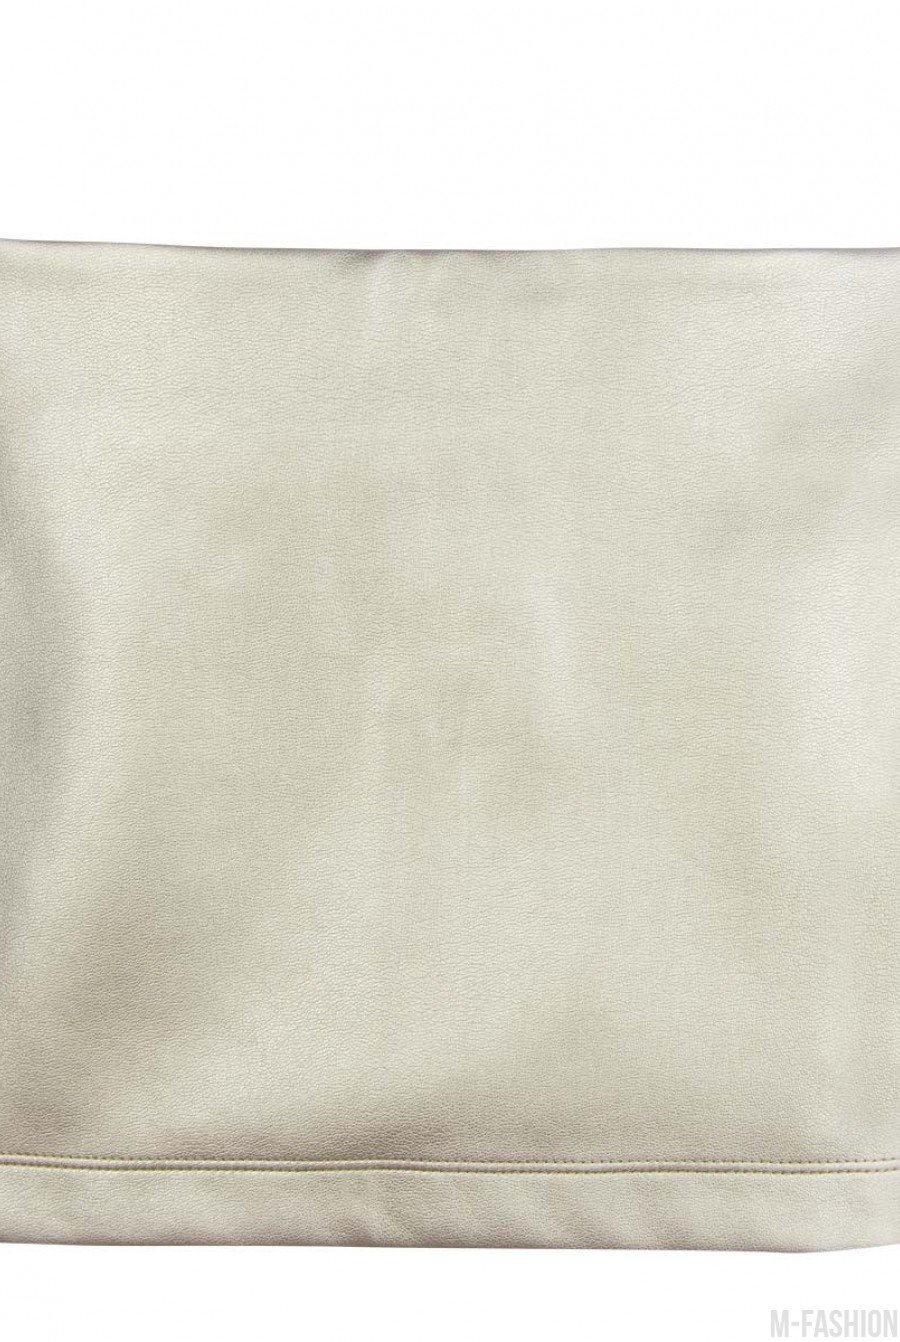 Прямая юбка из эко-кожи цвета "золотистый металлик" - Фото 1